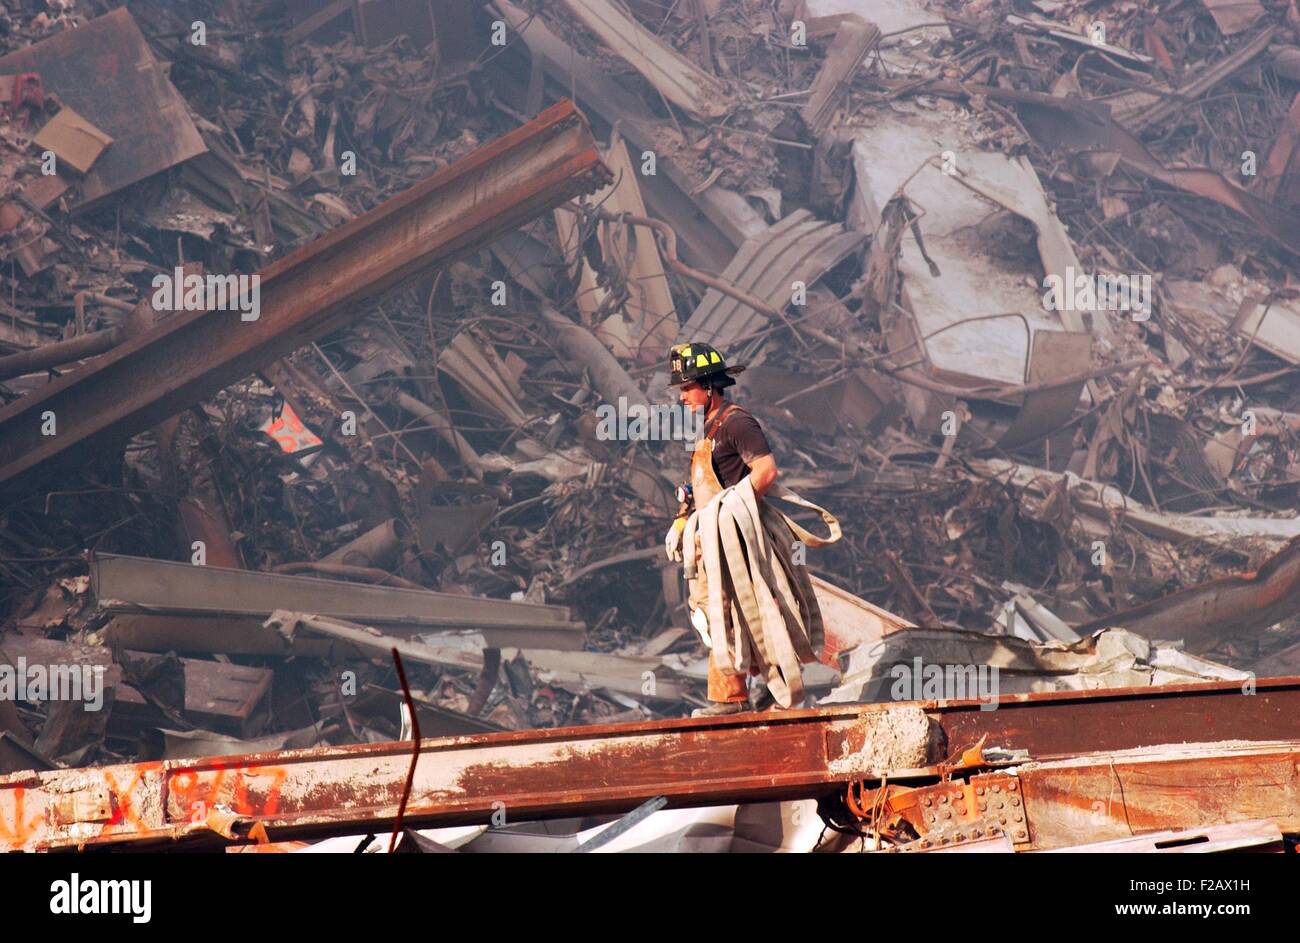 NYC fire fighter comporte un tuyau d'incendie sur des feux couvants et de l'épave au Ground Zero, 18 septembre 2001. World Trade Center, New York City, après des attaques terroristes du 11 septembre 2001. (BSLOC 2015 2 97) Banque D'Images